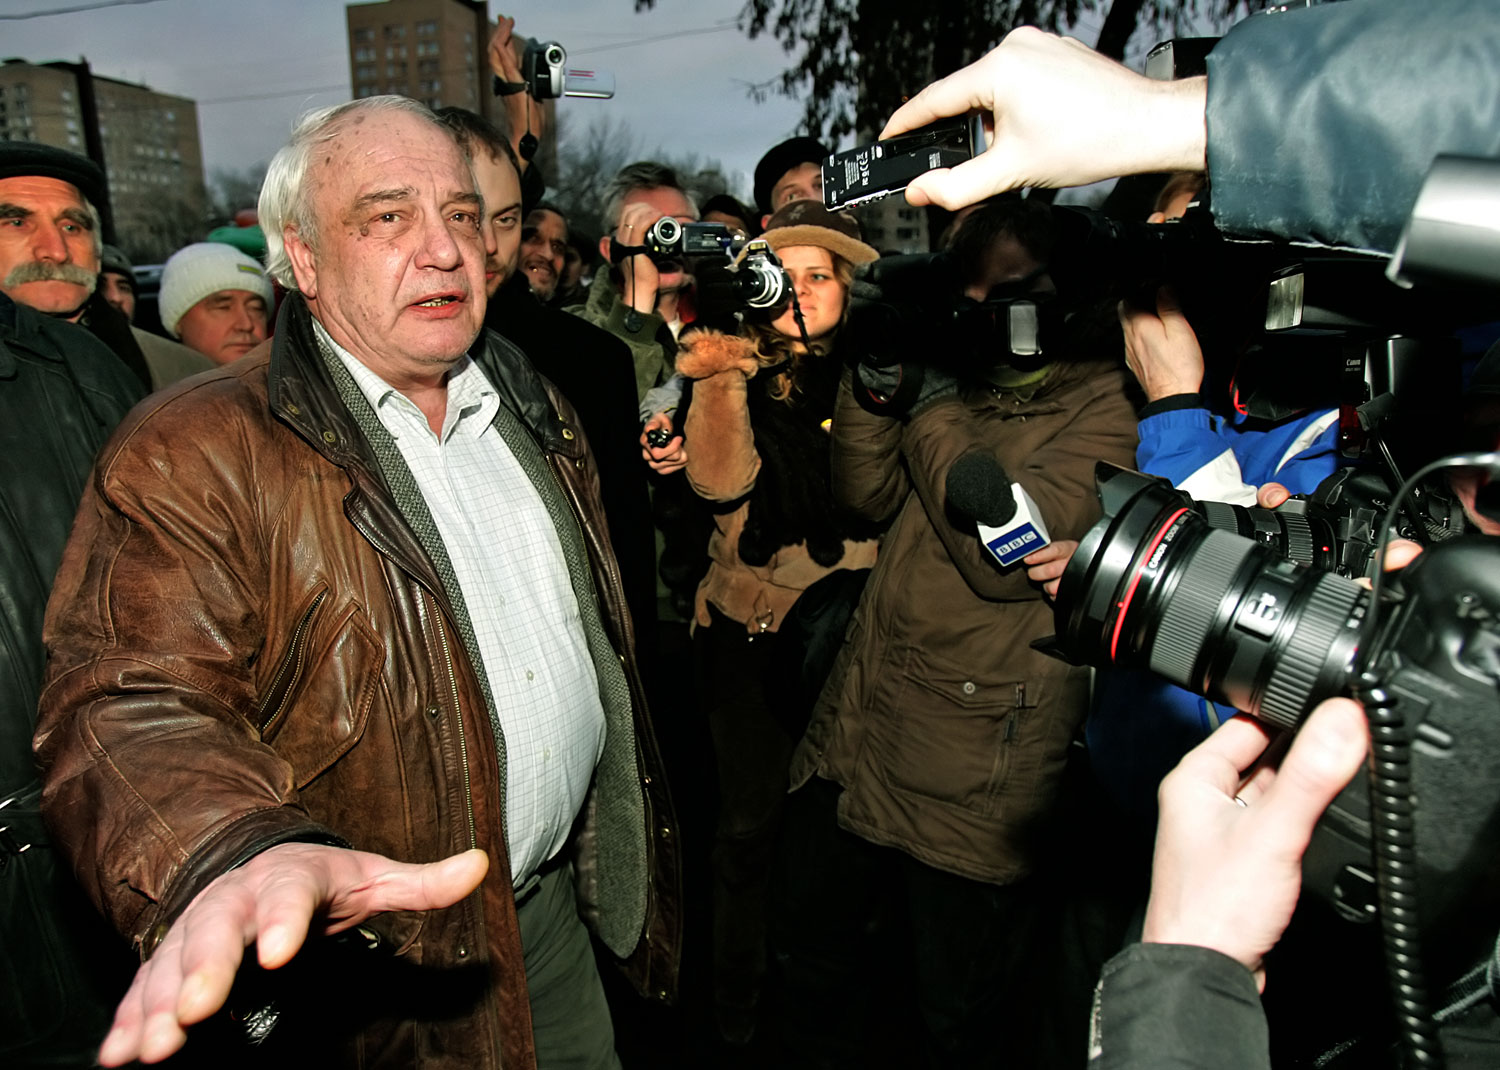 Bukovszkij Moszkvában a titkosszolgálatot vádolja azzal, hogy meg akarja akadályozni az indulását az elnökségért